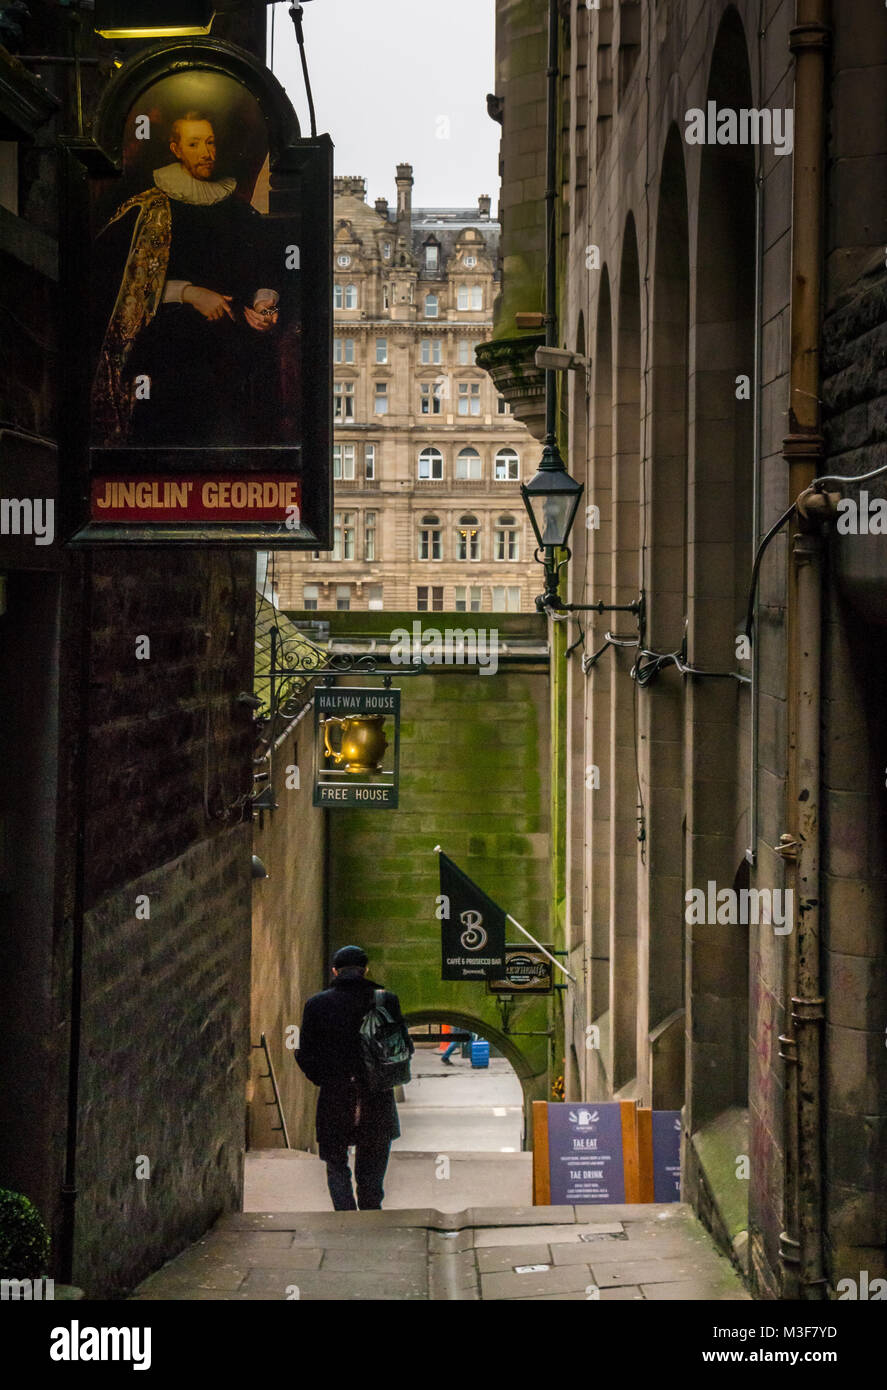 Man Walking in Fleshmarket Close alley avec Jinglin Geordie et enseignes de pub Halfway House, Édimbourg, Écosse, Royaume-Uni avec Balmoral Hotel à distance Banque D'Images